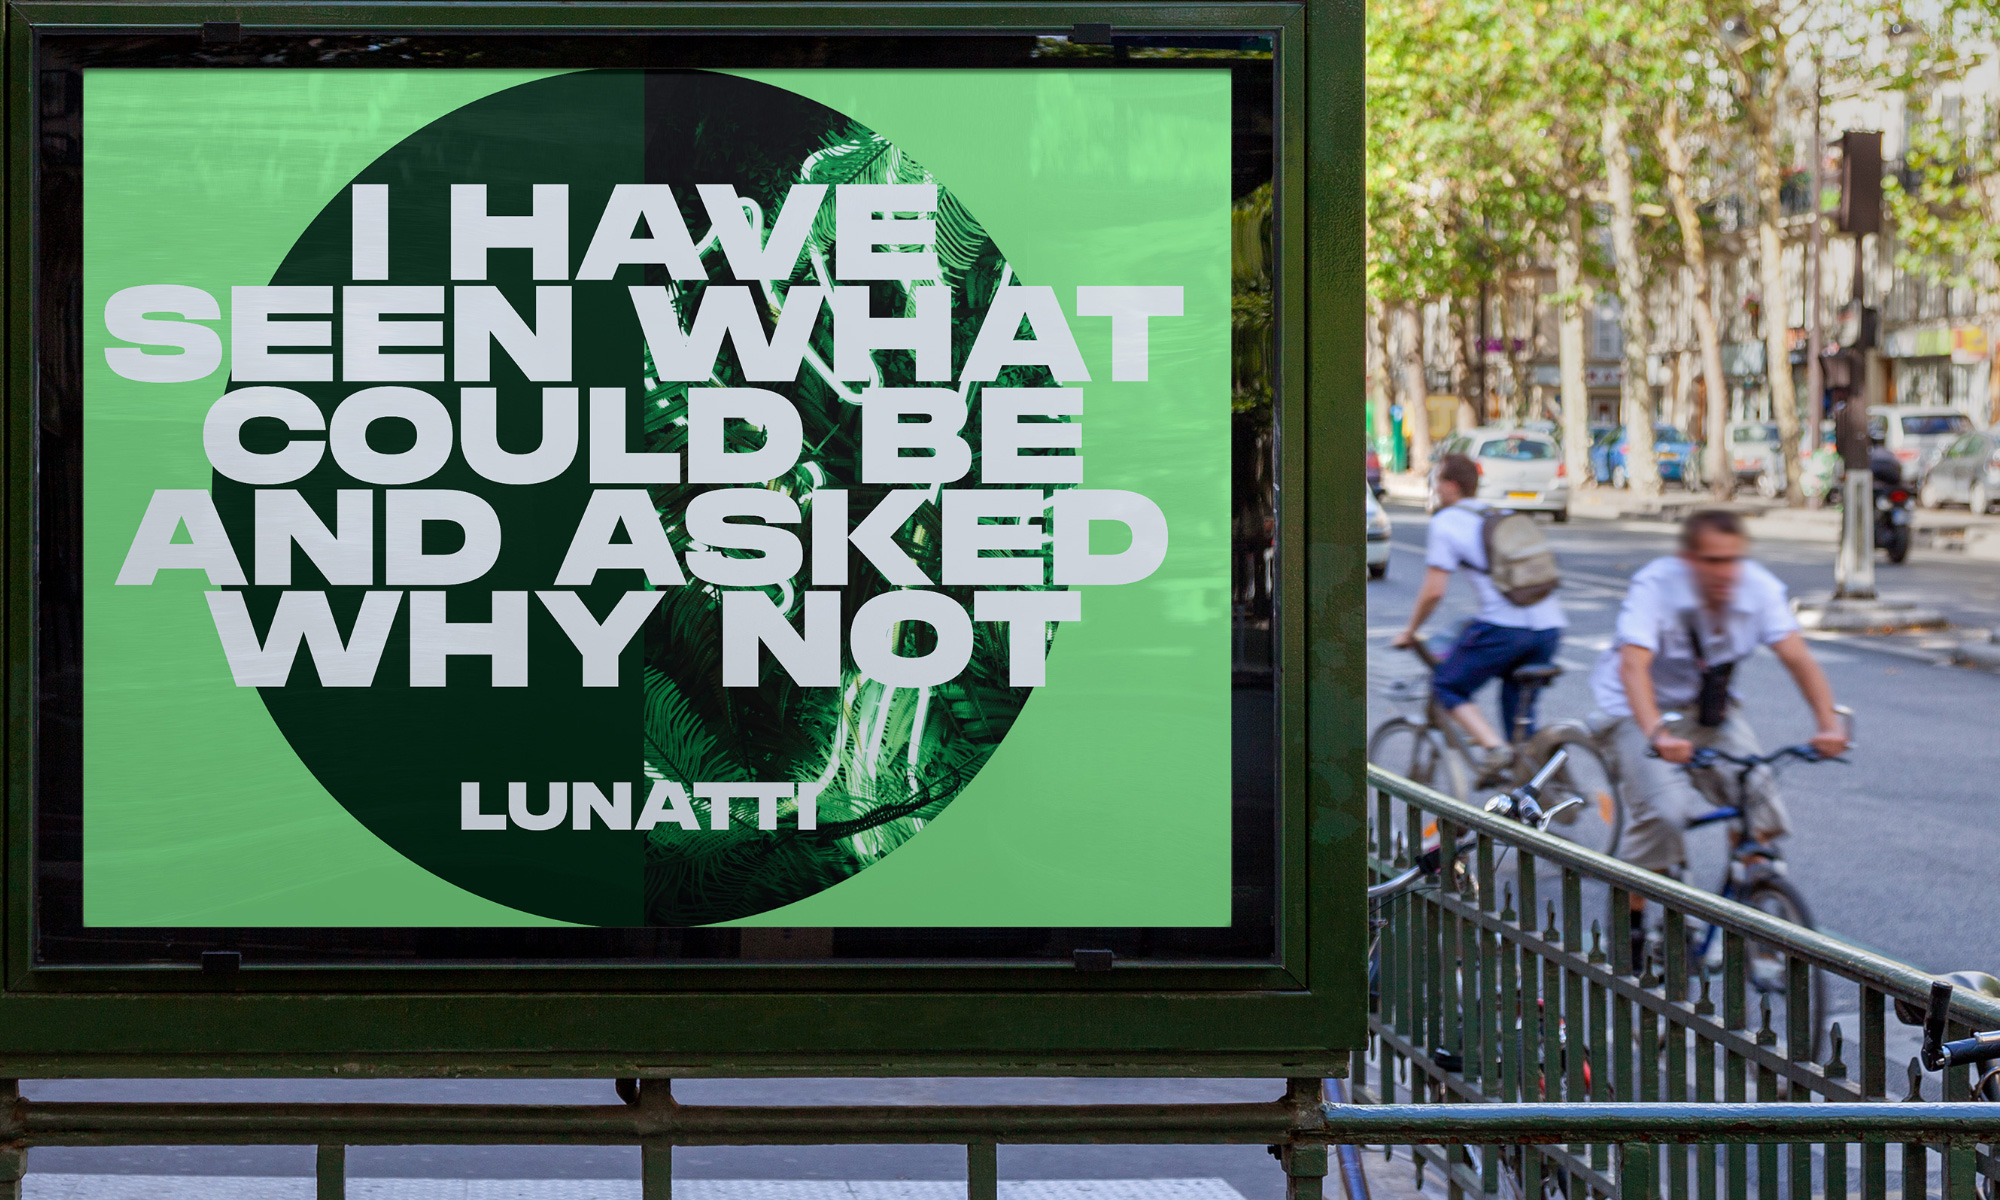 Lunatti advertising